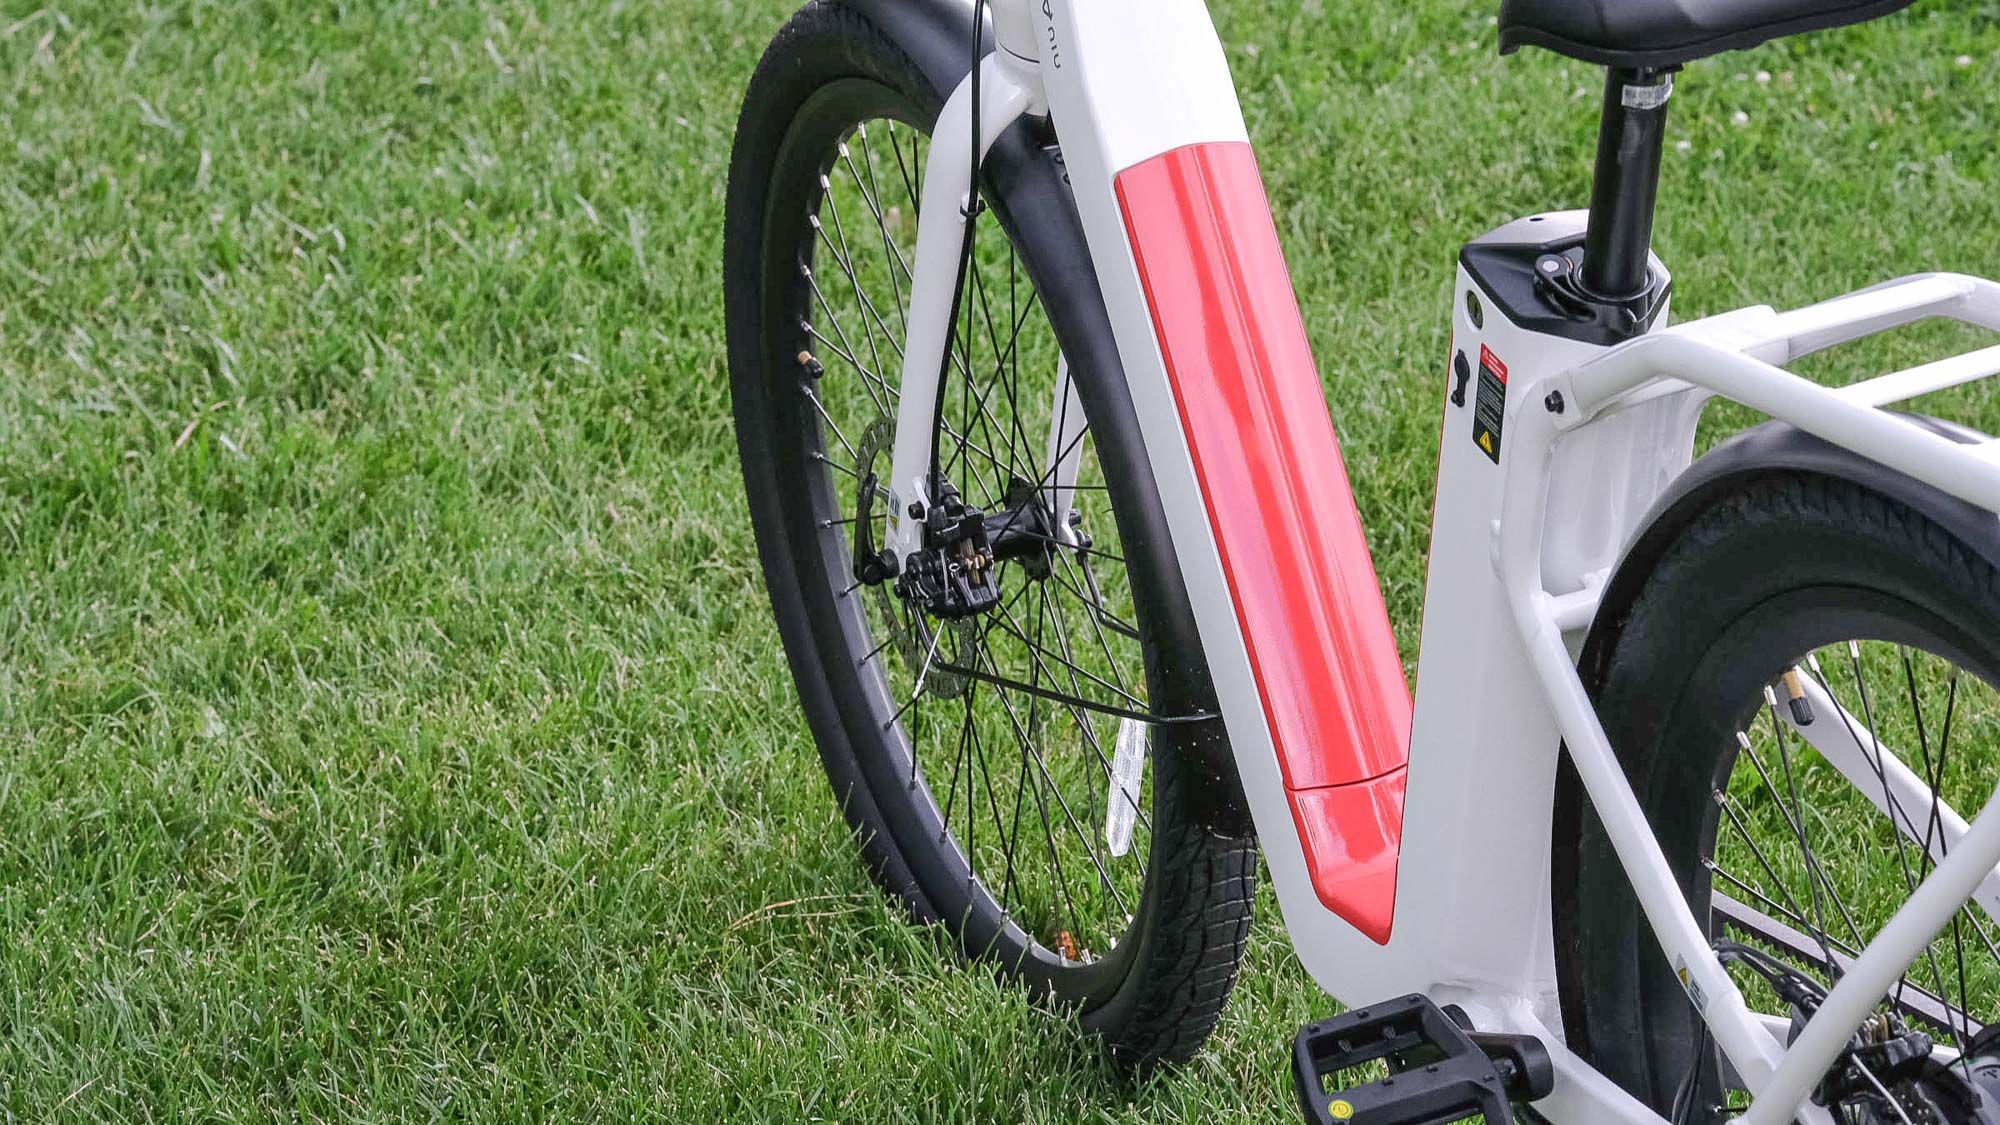 NIU BQi-C3 Pro E-bisiklet parkta çimlerin üzerine park edilmiş